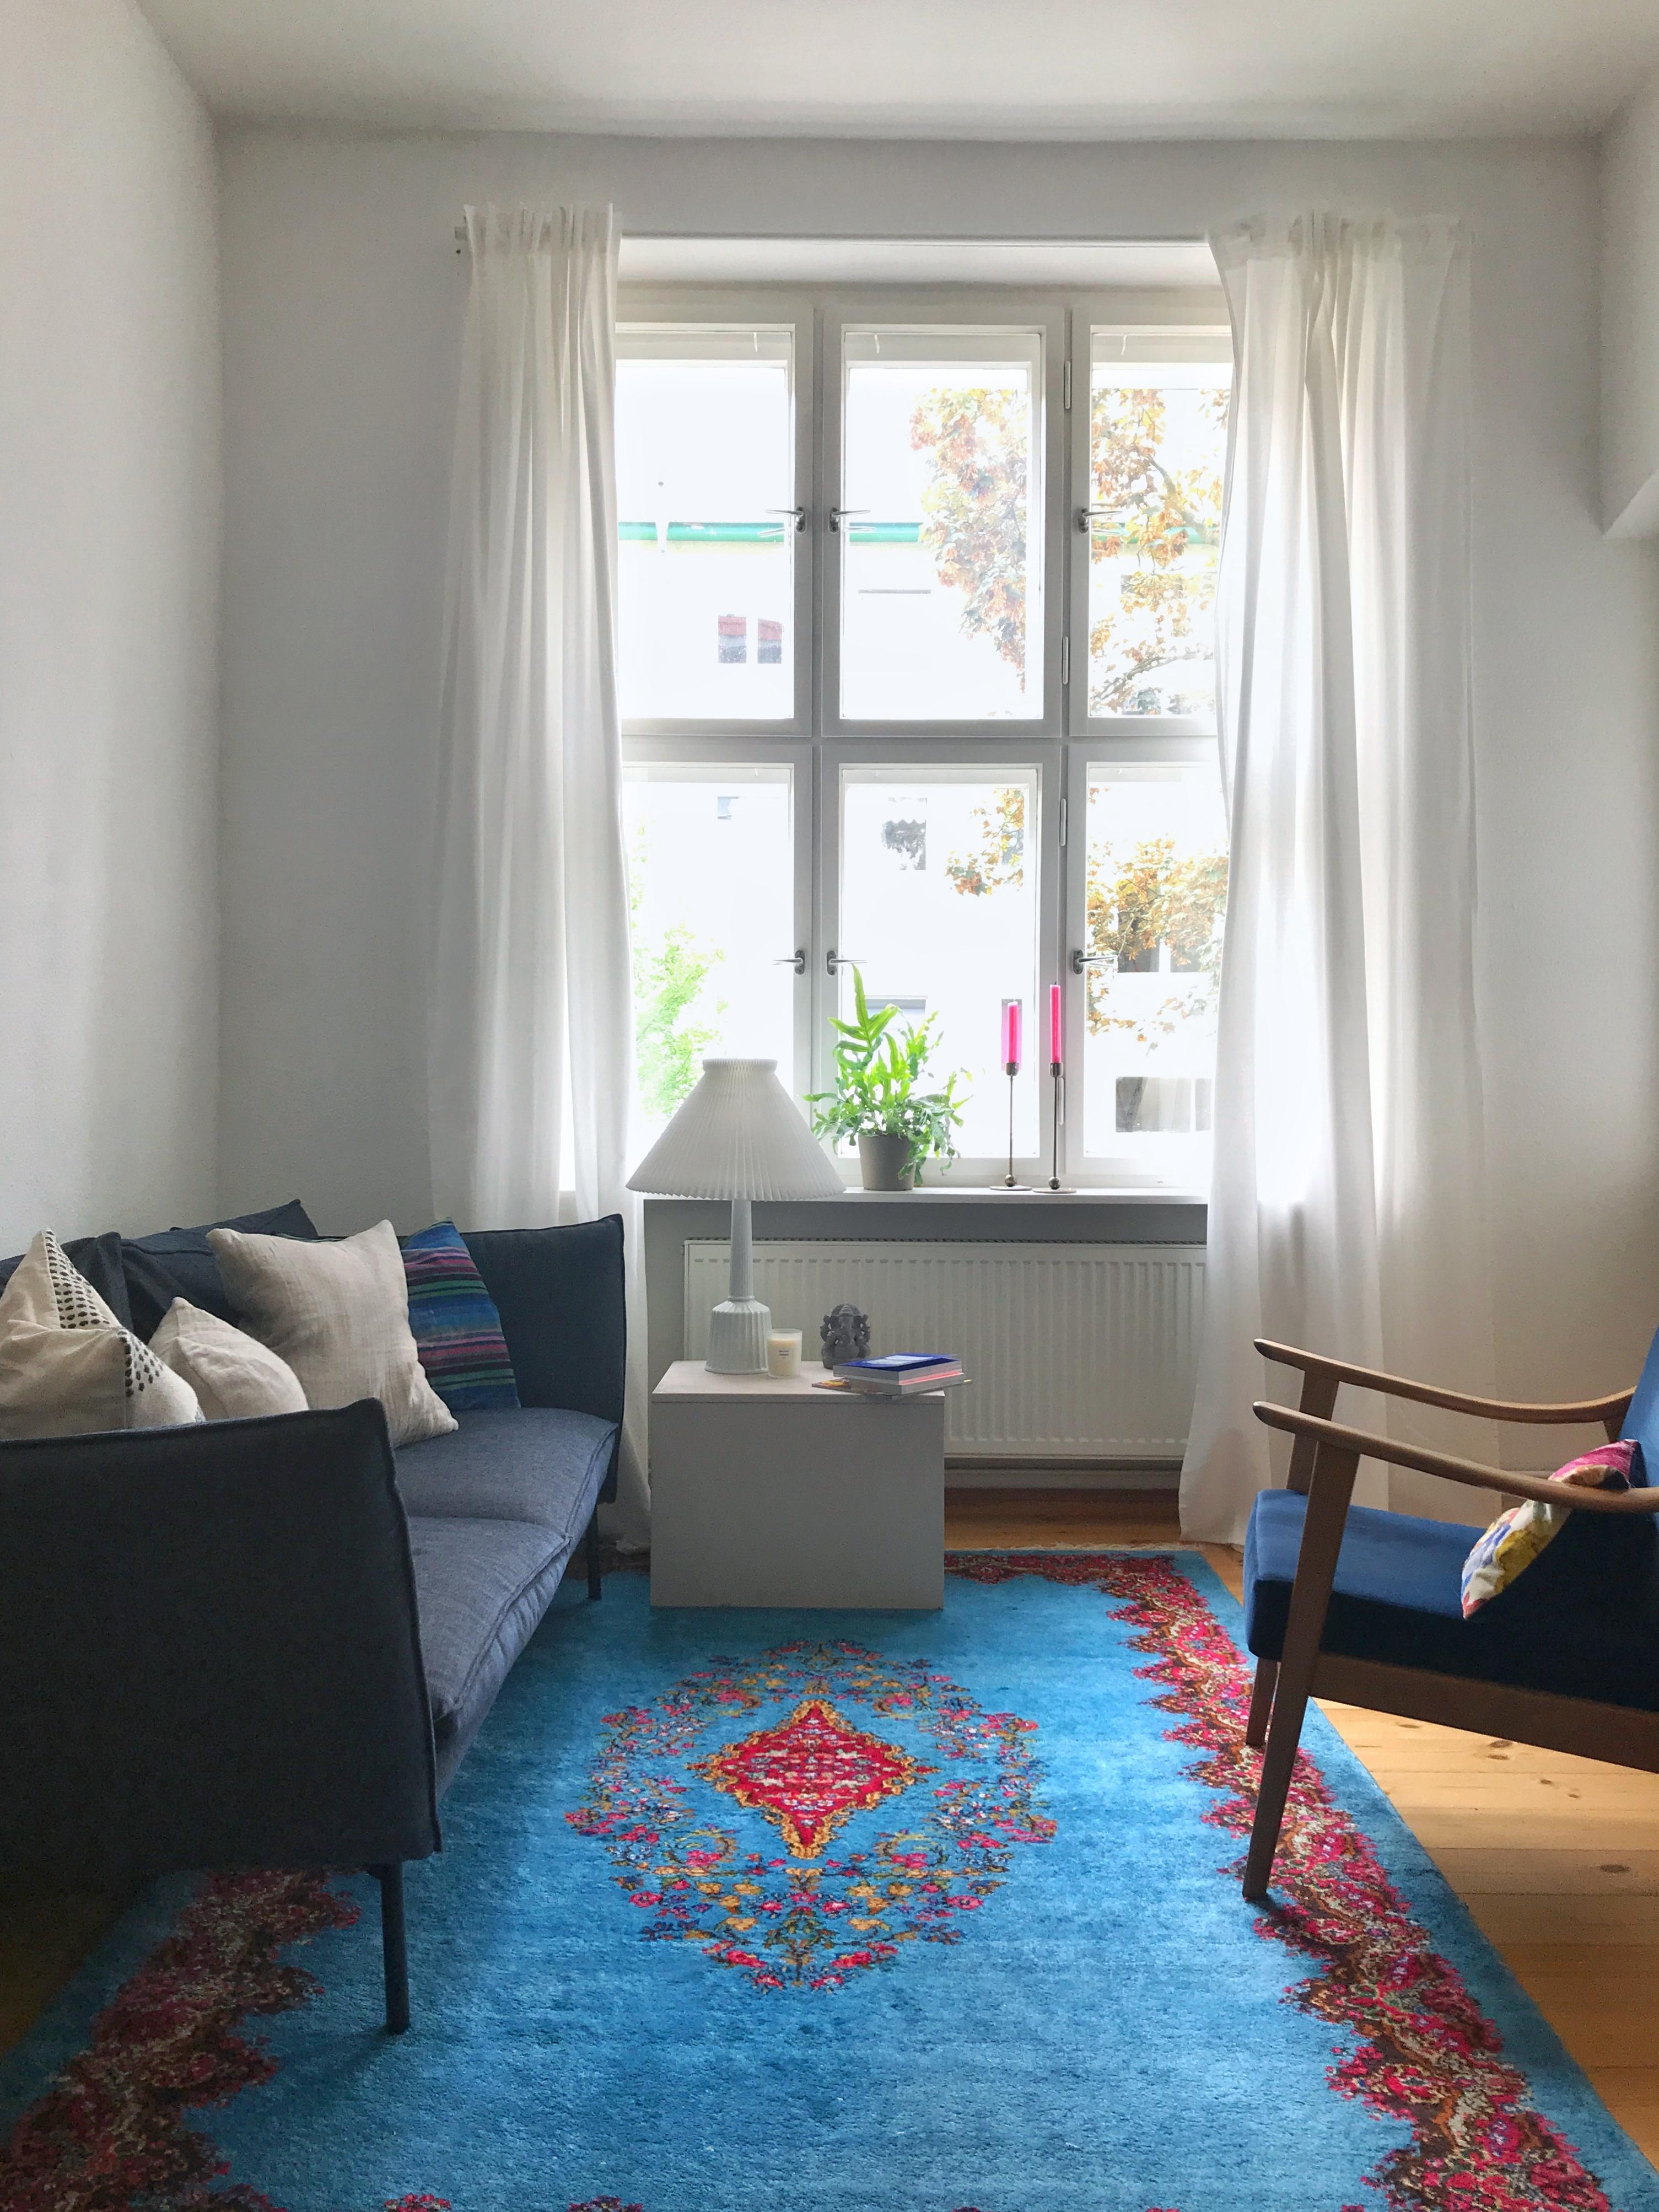 #wohnzimmer #altbau #sofa #zuhausesein #myhome #blau #farben #vintage #diy #berlin